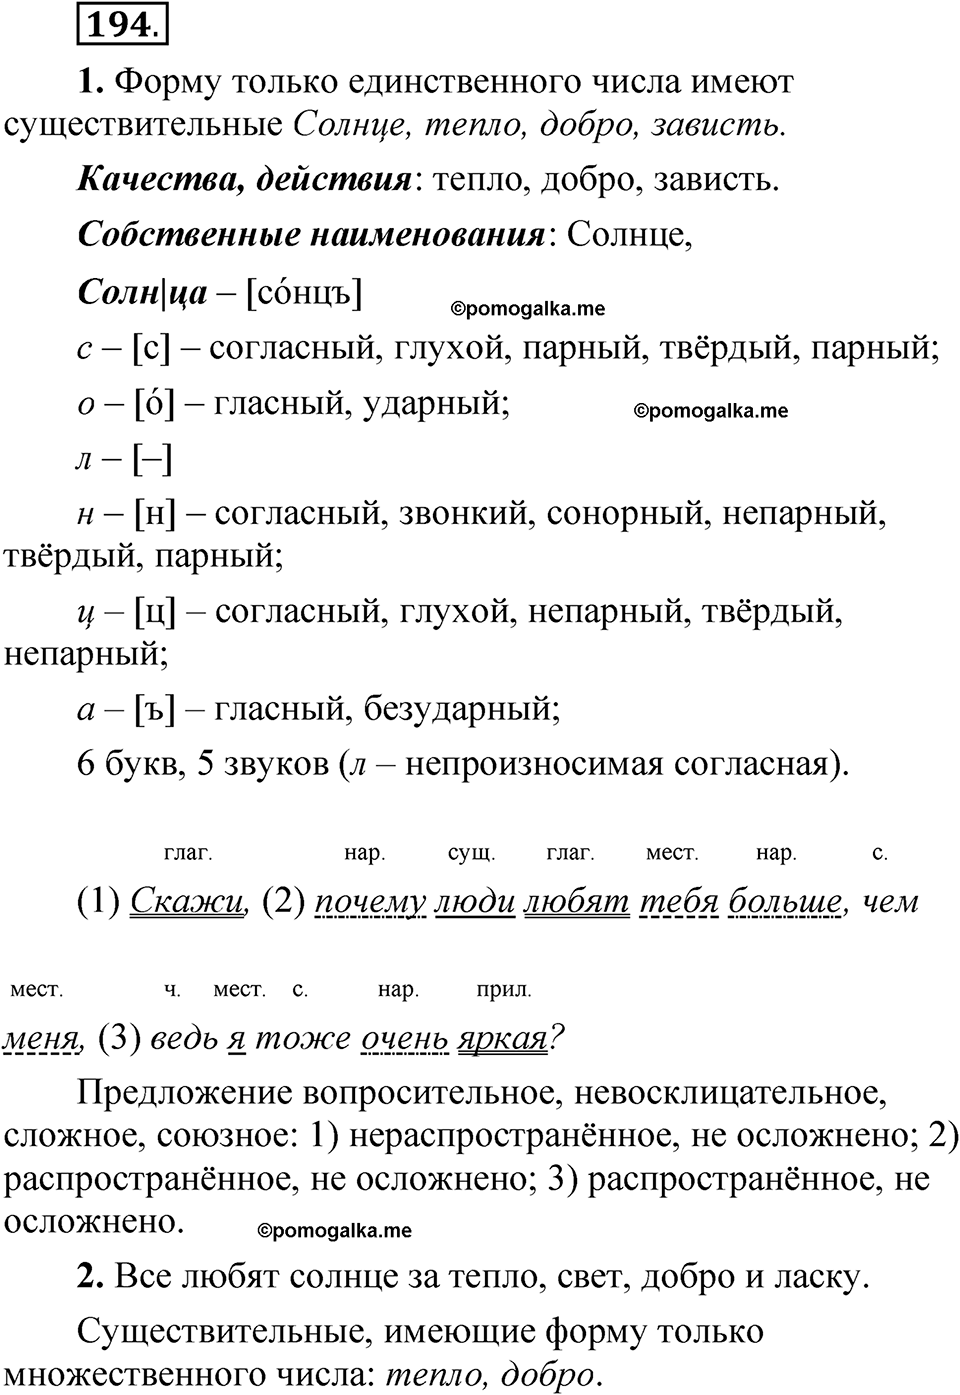 страница 134 упражнение 194 русский язык 5 класс Быстрова, Кибирева 2 часть 2021 год